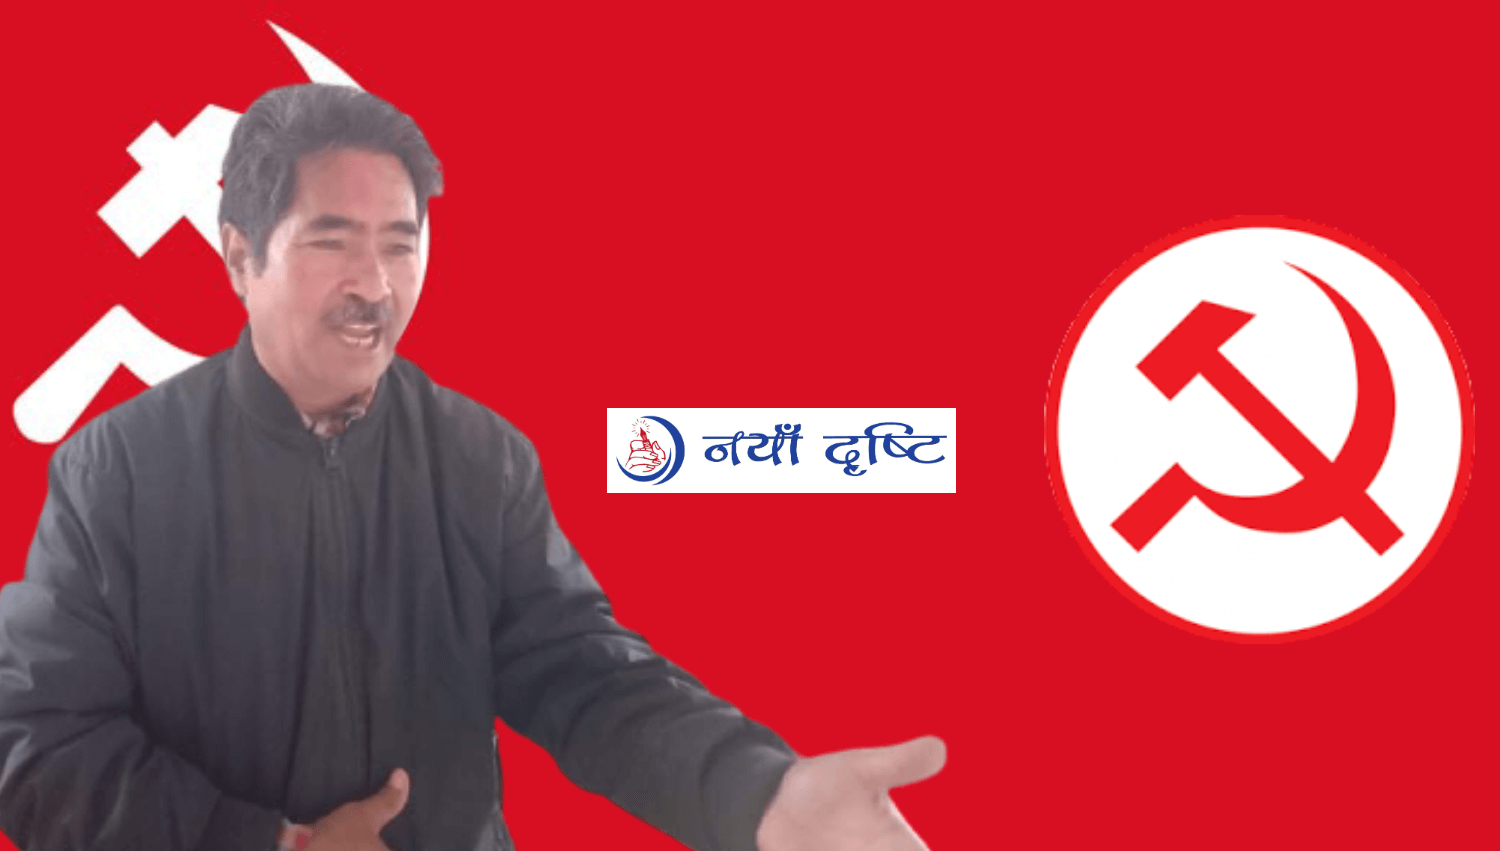 नेपालमा सबैभन्दा कम विवादित र लोकप्रिय पार्टी माओवादी केन्द्र हाे : बस्नेत